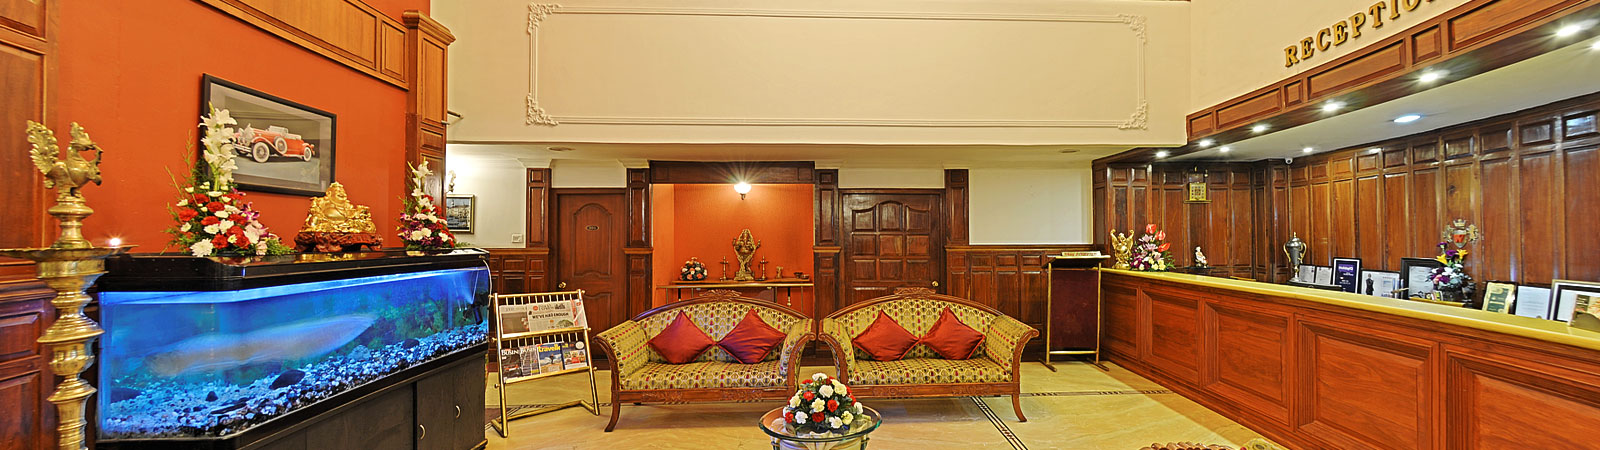 luxury hotels in ooty